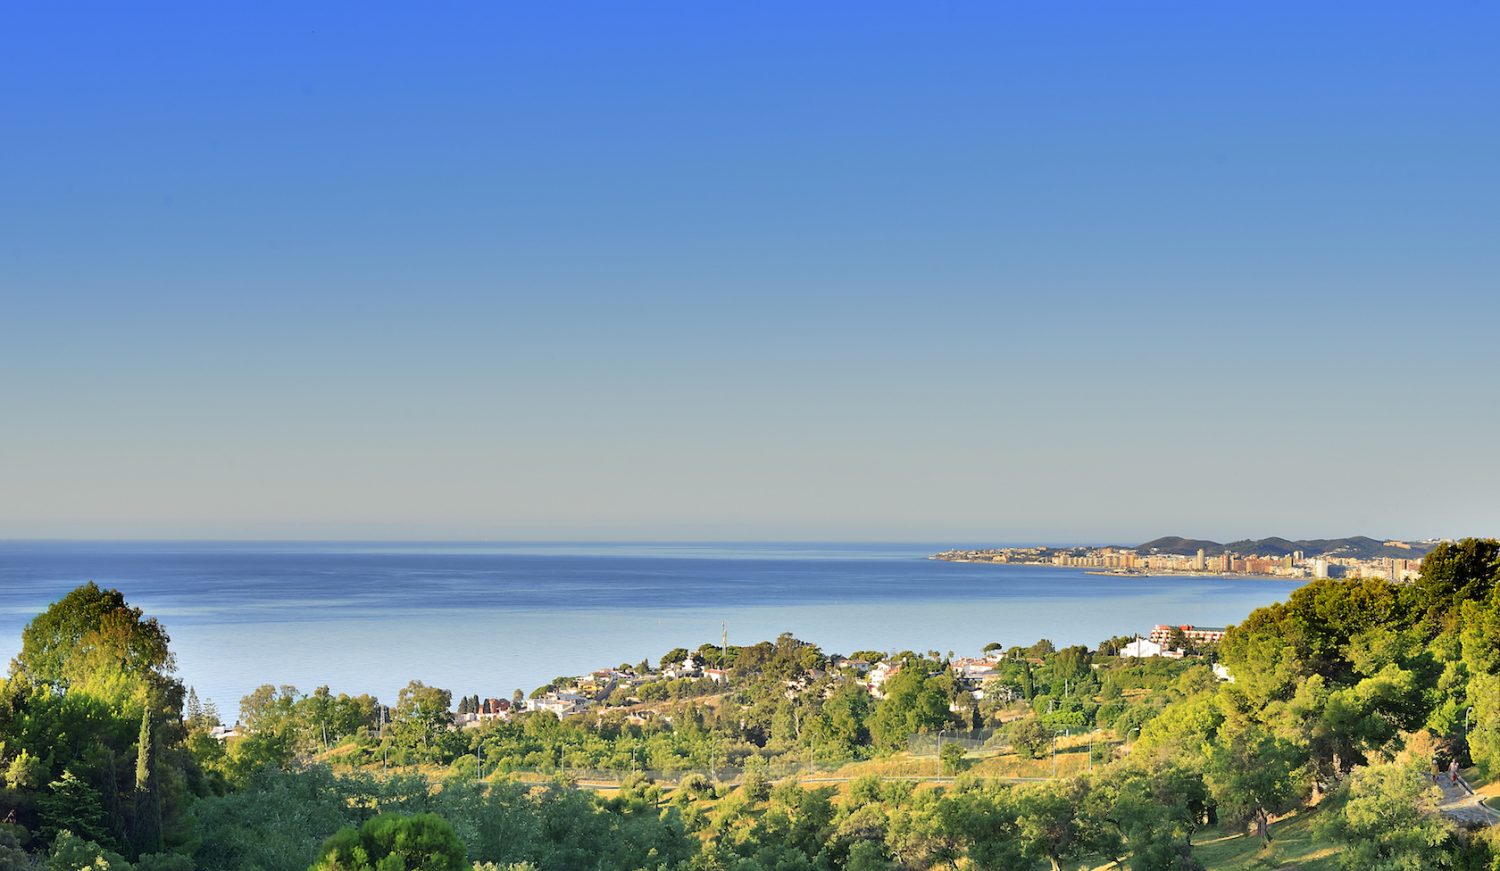 Todas las villas cuentan con impresionantes vistas panorámicas al mar Mediterráneo